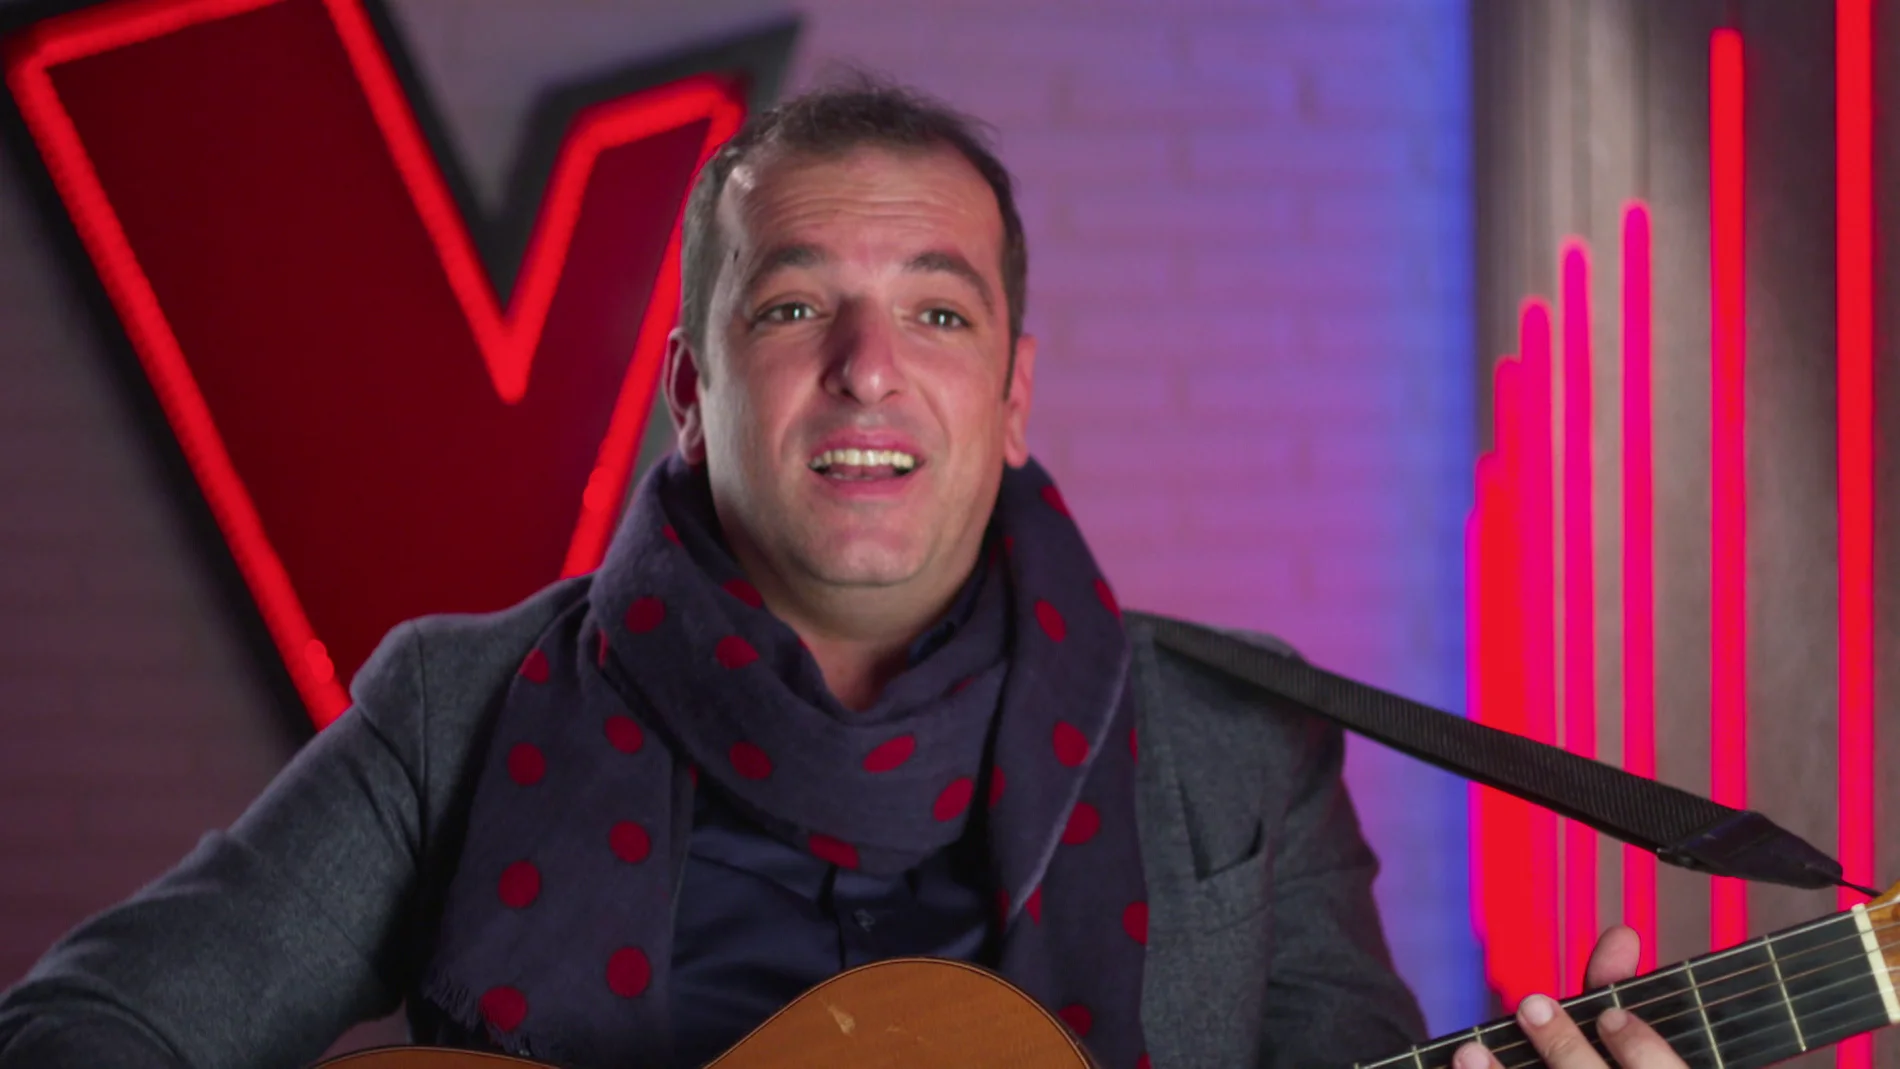 Javi Moya pone rumba a 'La Voz': "Tengo una guitarra en la consulta para sacar una sonrisa a mis pacientes"